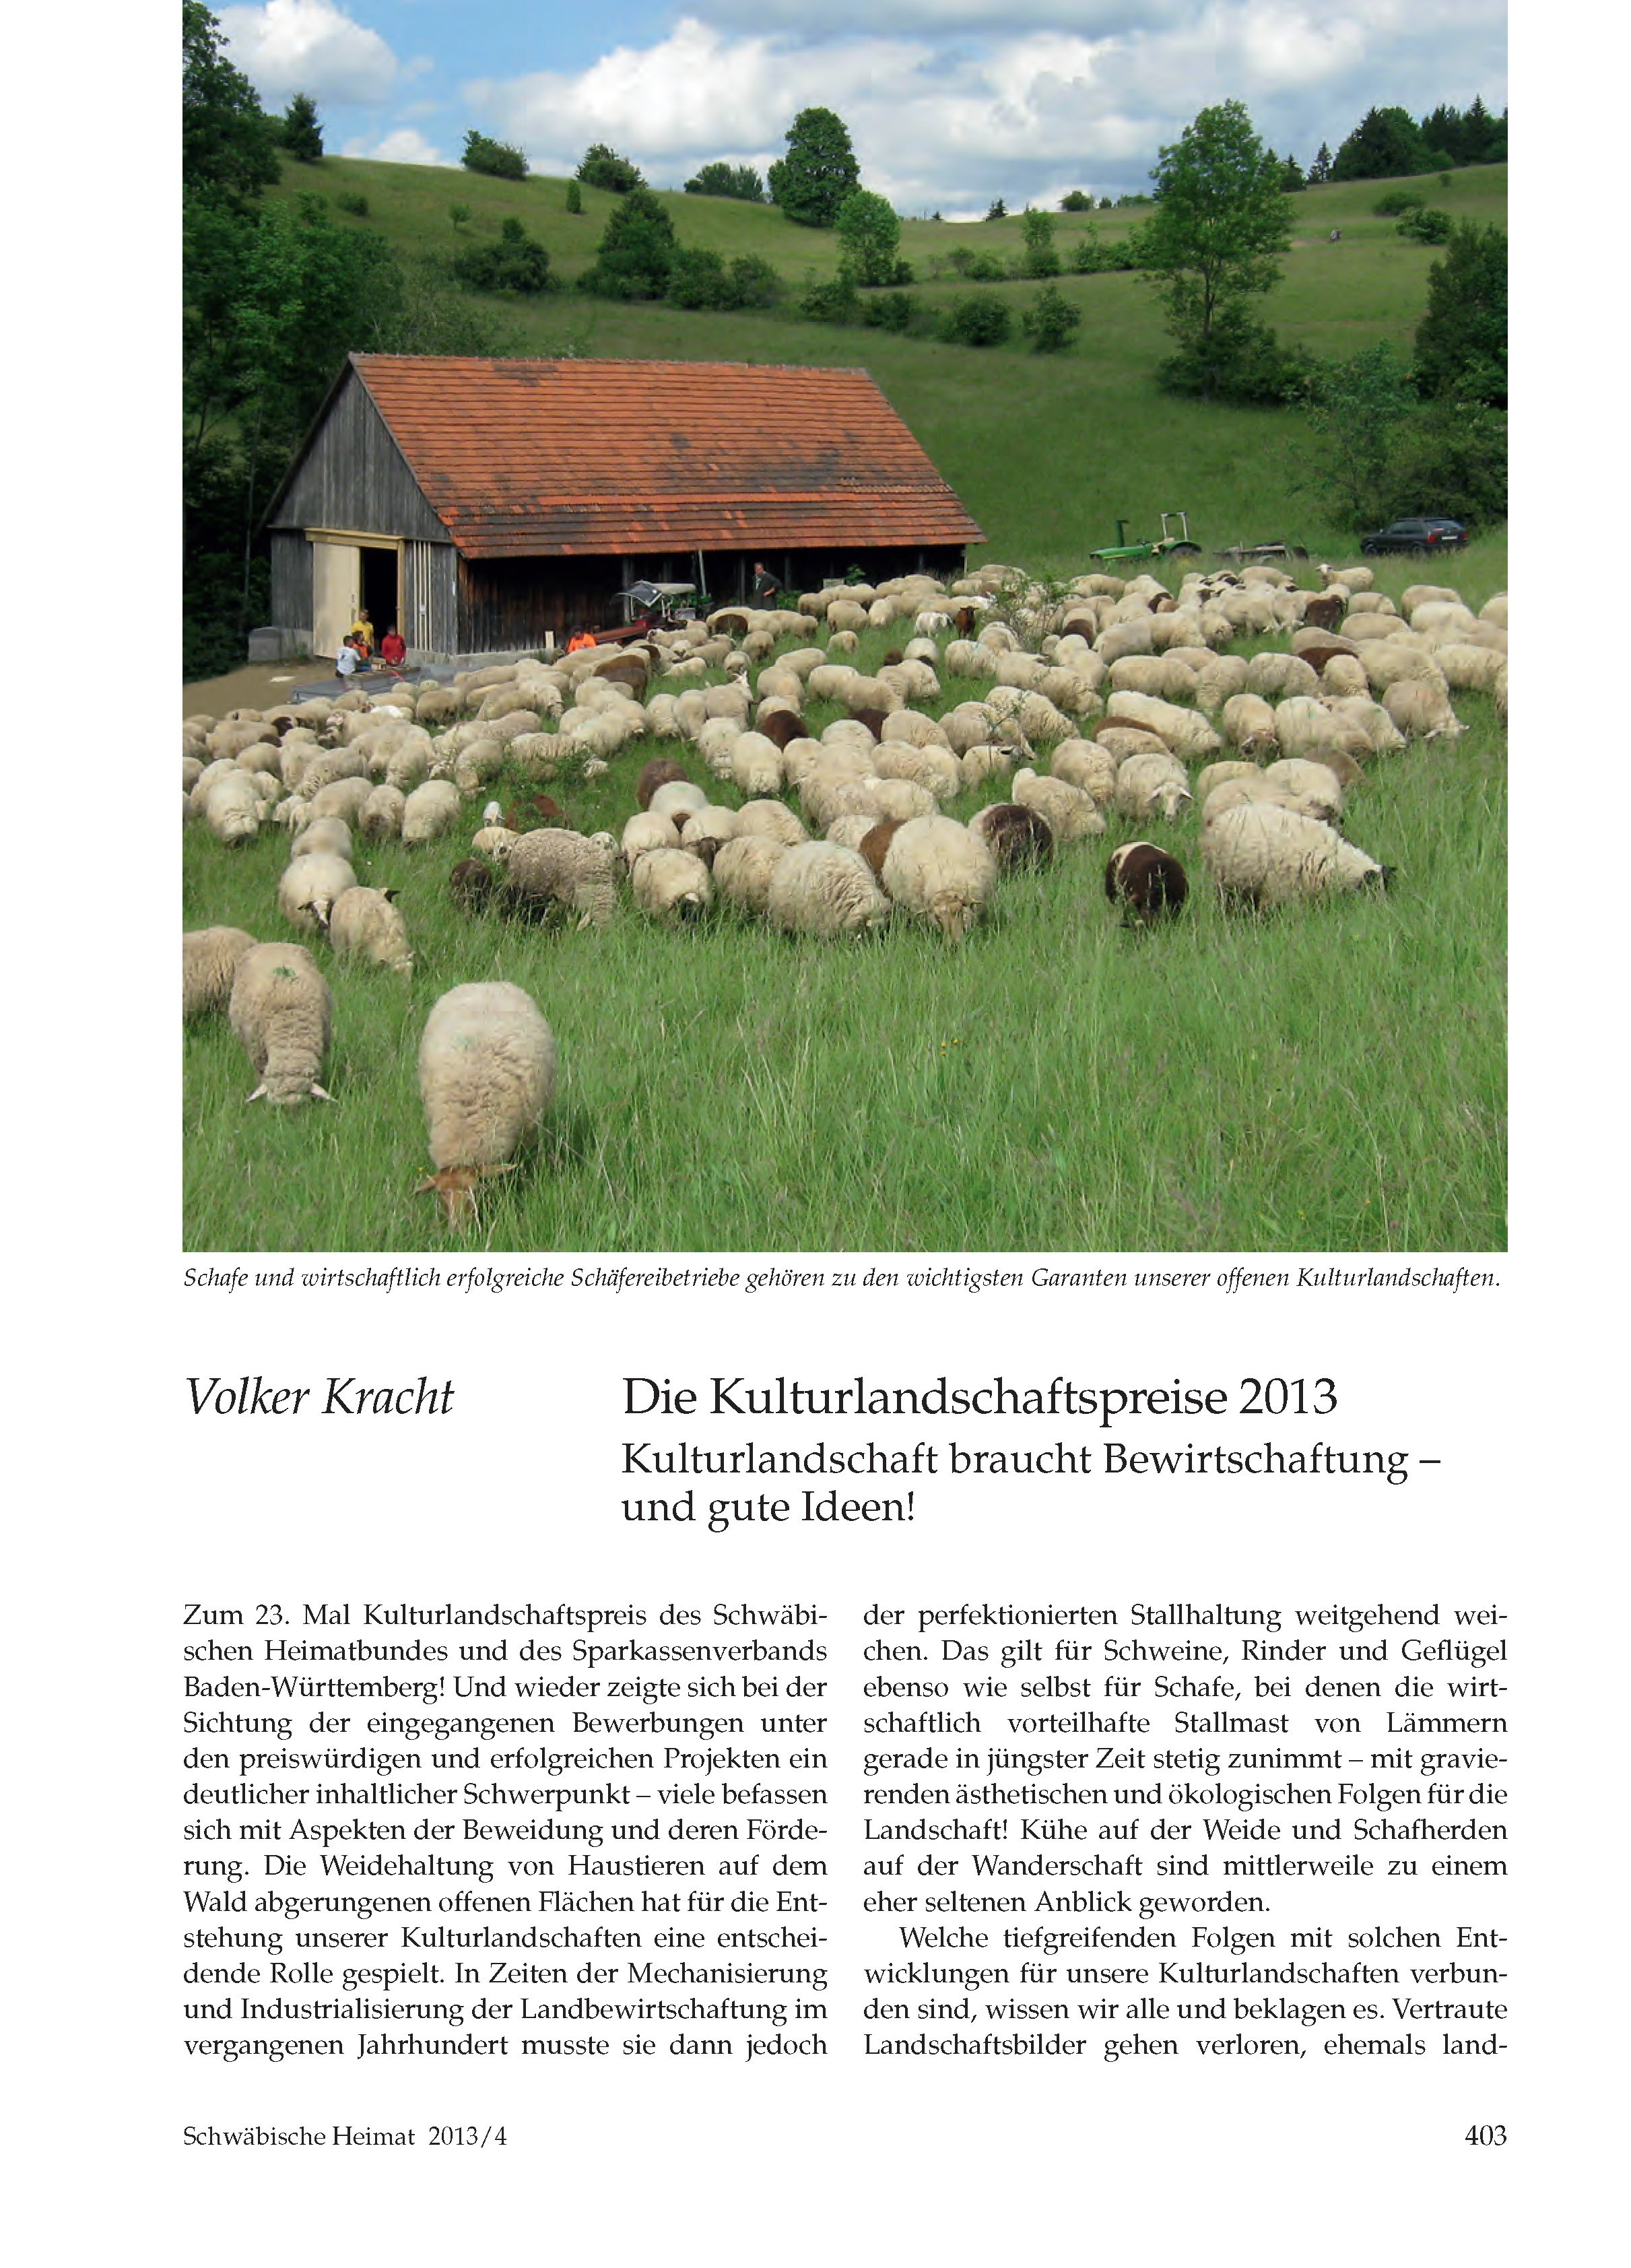 Die Kulturlandschaftspreise 2013 | Schwäbische Heimat